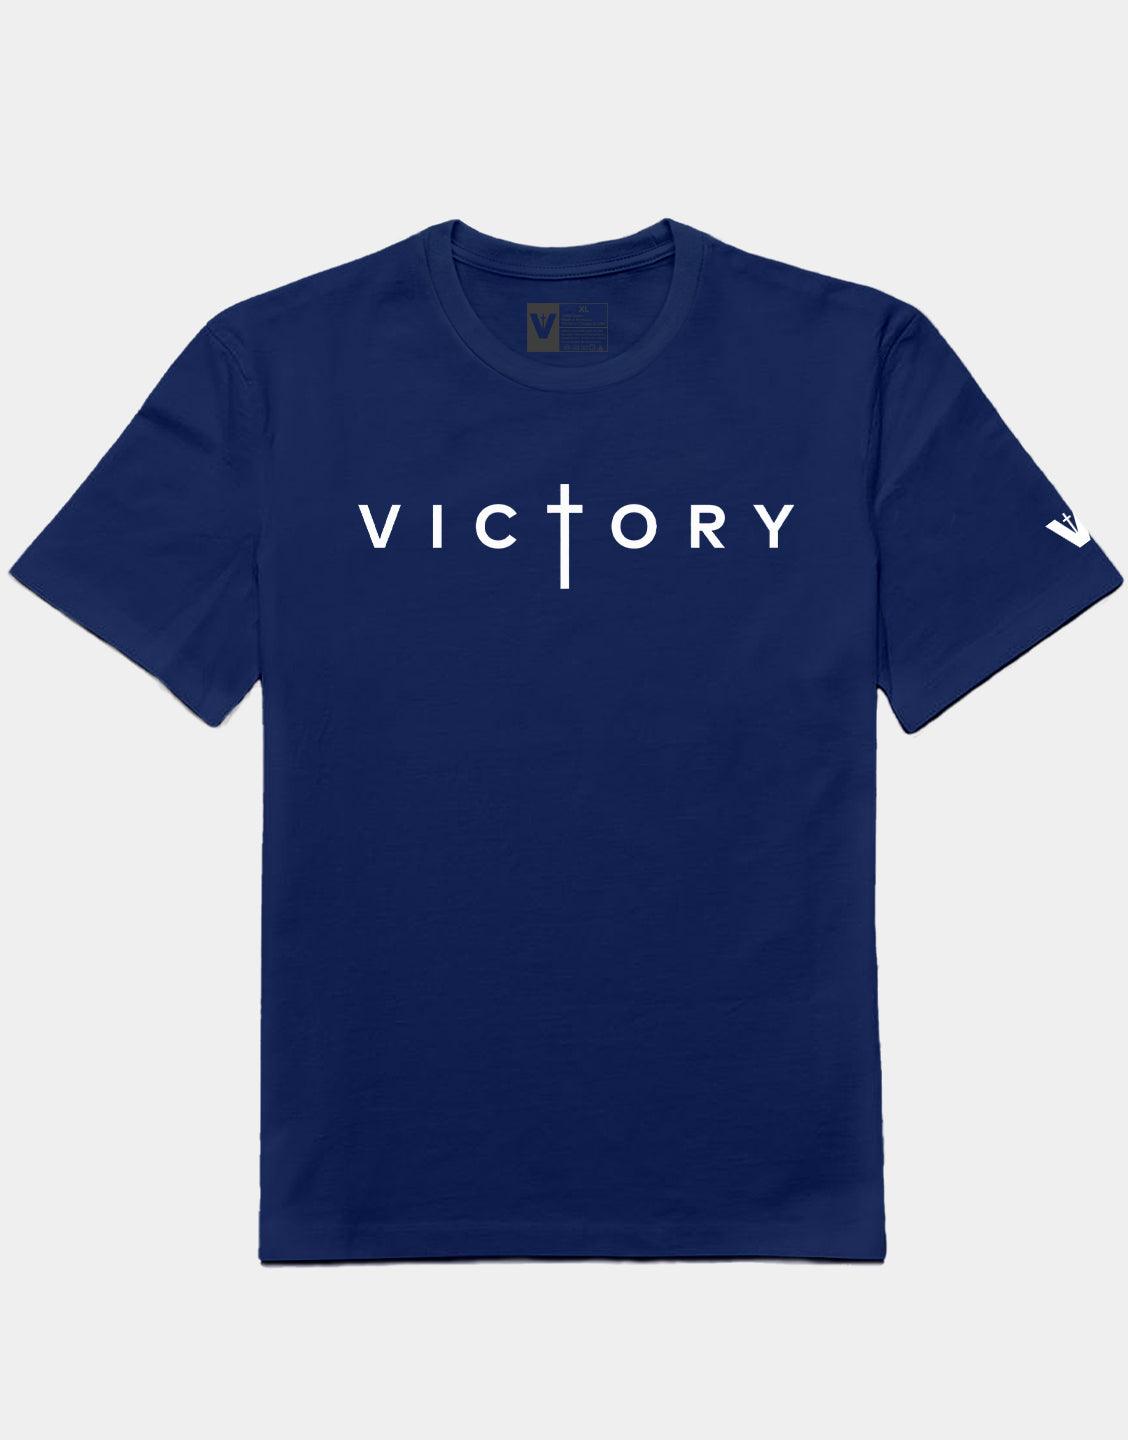 Victory Navy Shirt VOTC T Clothing –